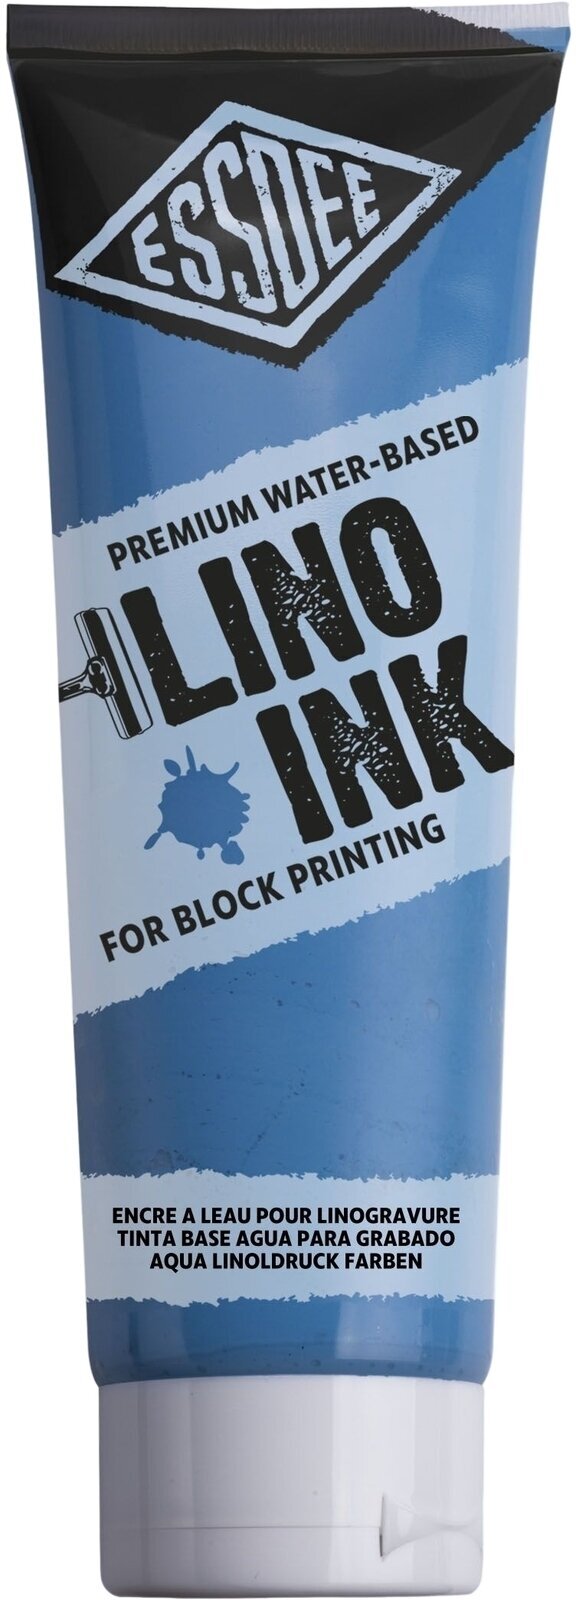 Verf voor linosnede Essdee Block Printing Ink Verf voor linosnede Fluorescent Blue 300 ml